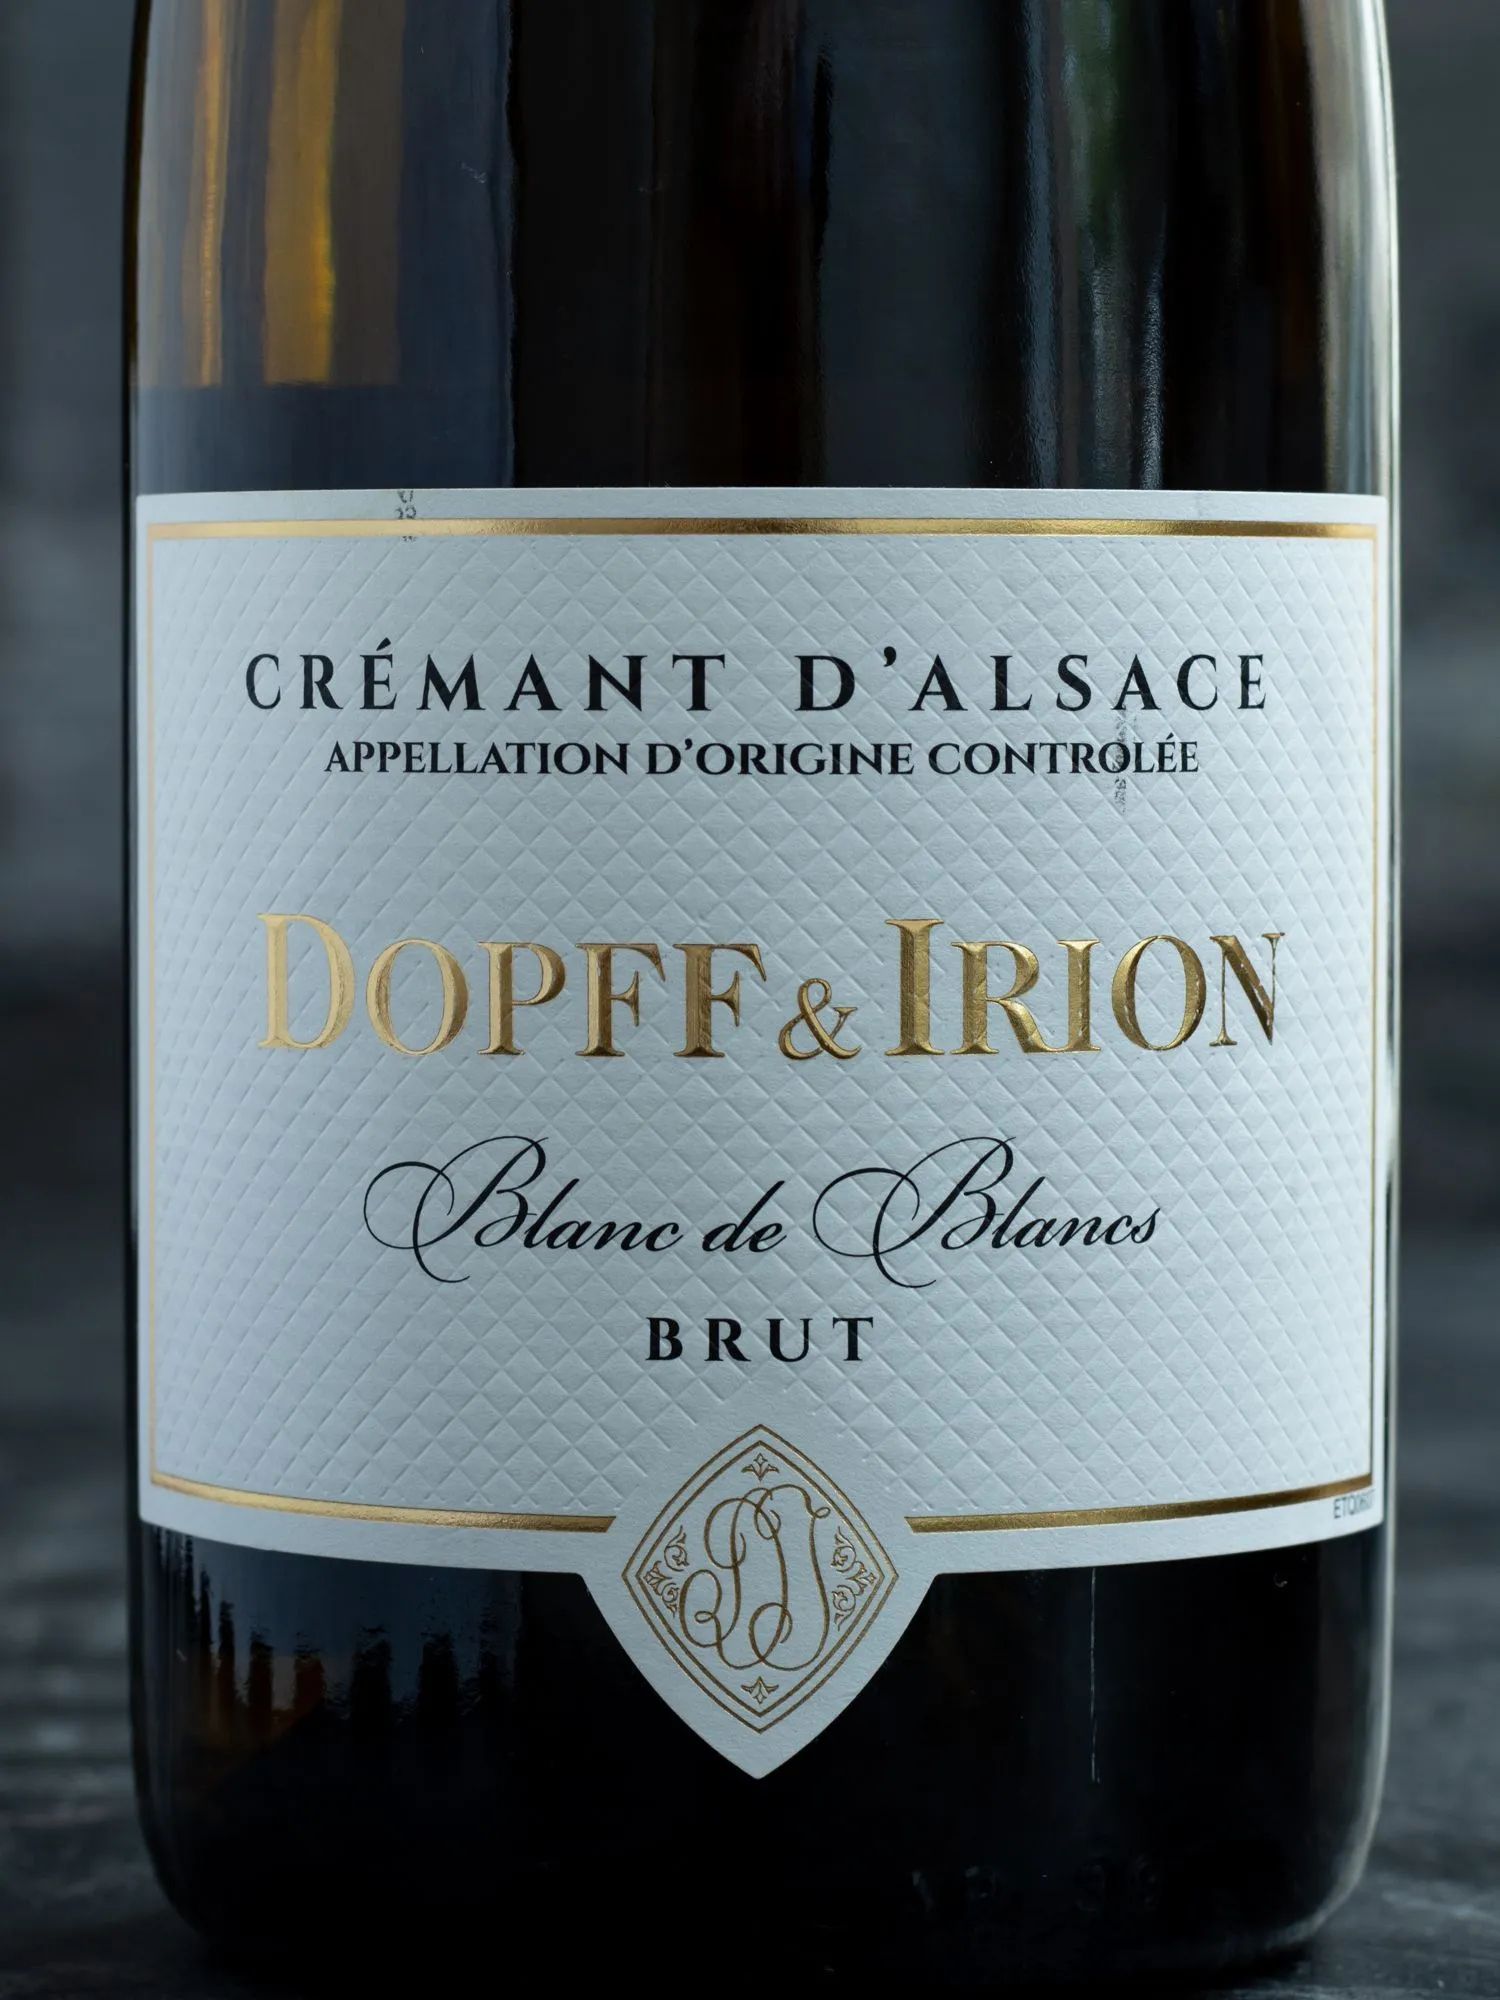 Игристое вино Dopff & Irion Cremant d'Alsace Brut Blanc de Blanc /Допф энд Ирион Креман д'Эльзас Брют Блан де Блан